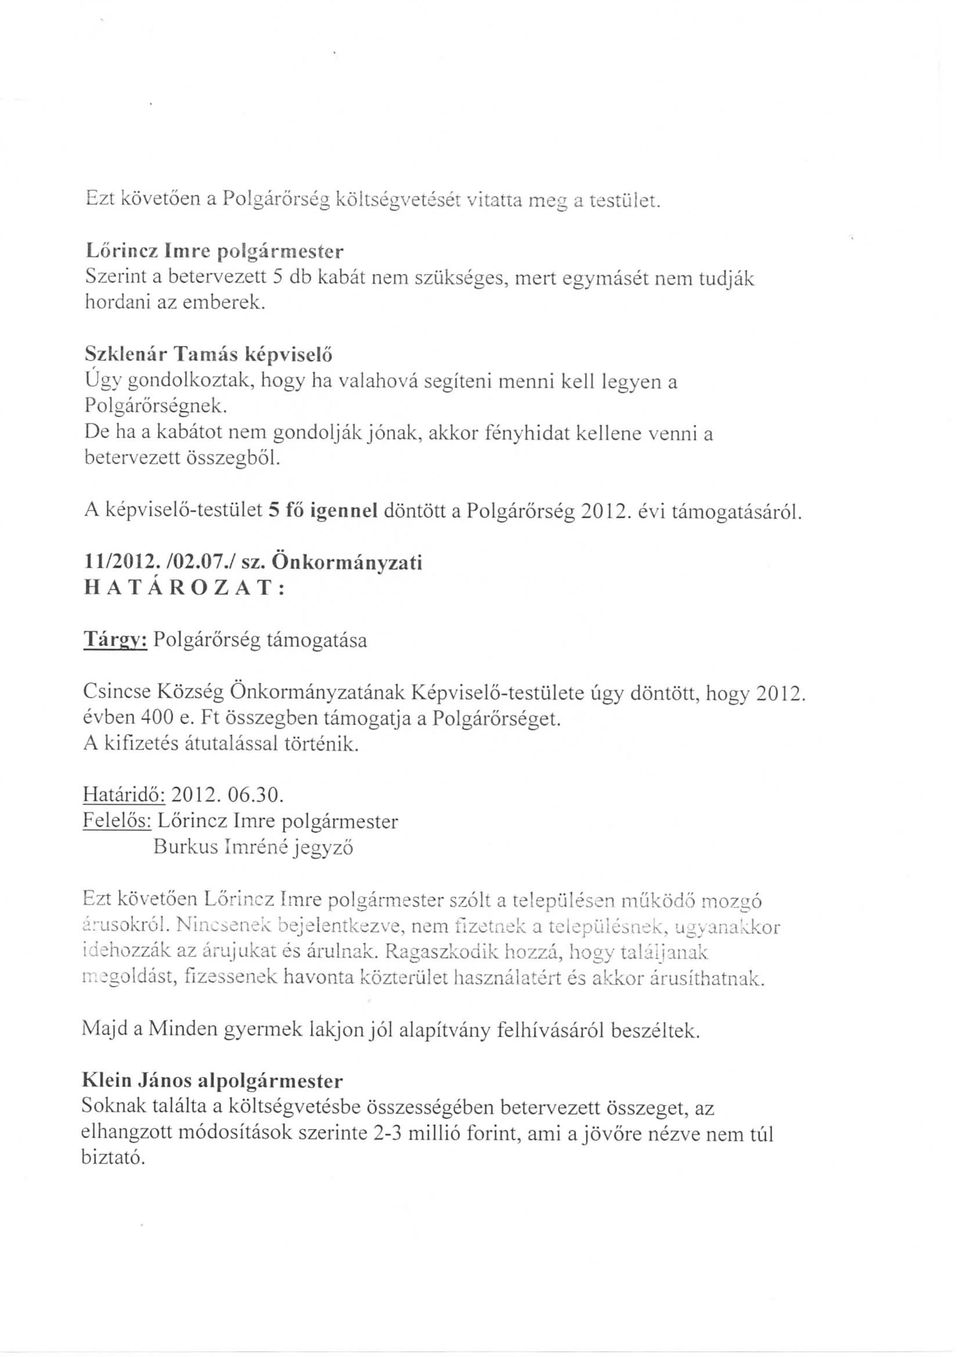 A kepviselo-testiilet 5 fo igennel dontott a Polgarorseg 2012. evi tamogatasarol. 11/2012. /02.07./ sz.